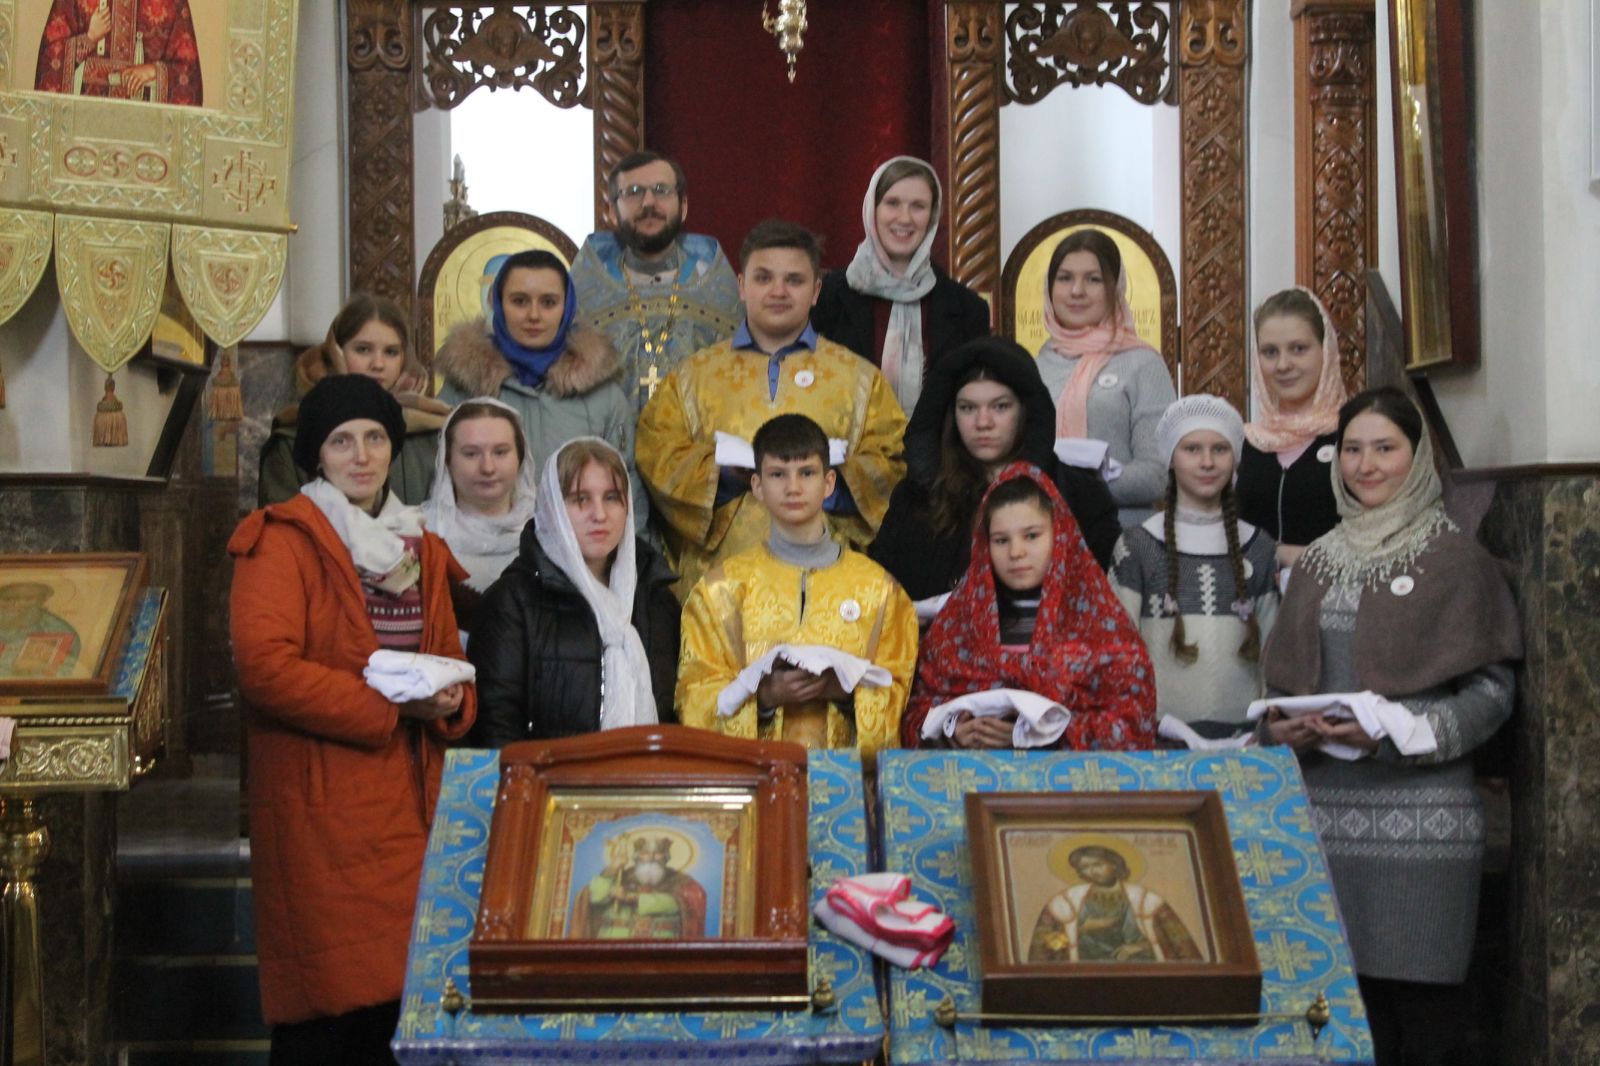 Посвящение в братчики состоялось в кафедральном соборе Воскресения Христова г. Борисова